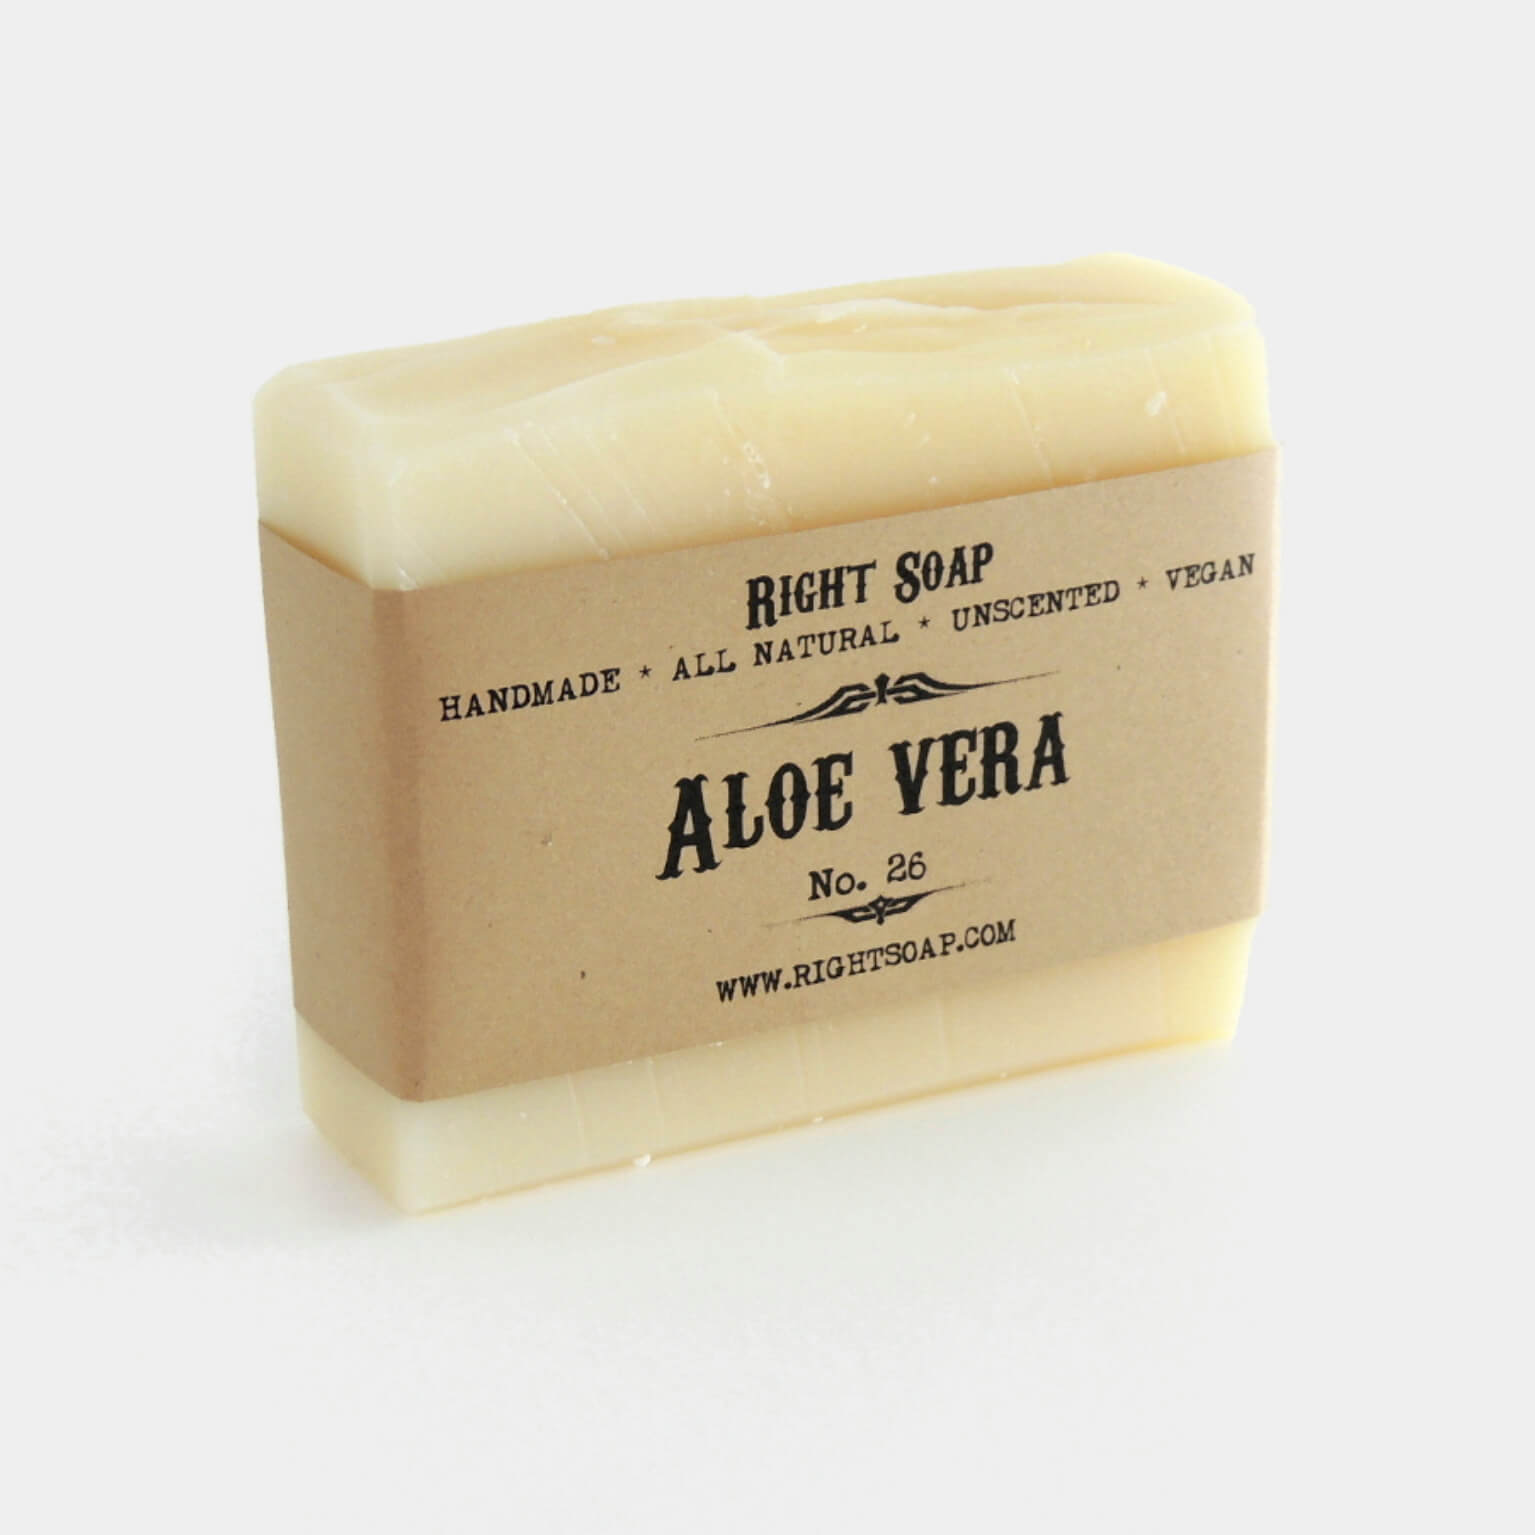 Unscented Soap  Natural Unscented Soap for Sensitive Skin